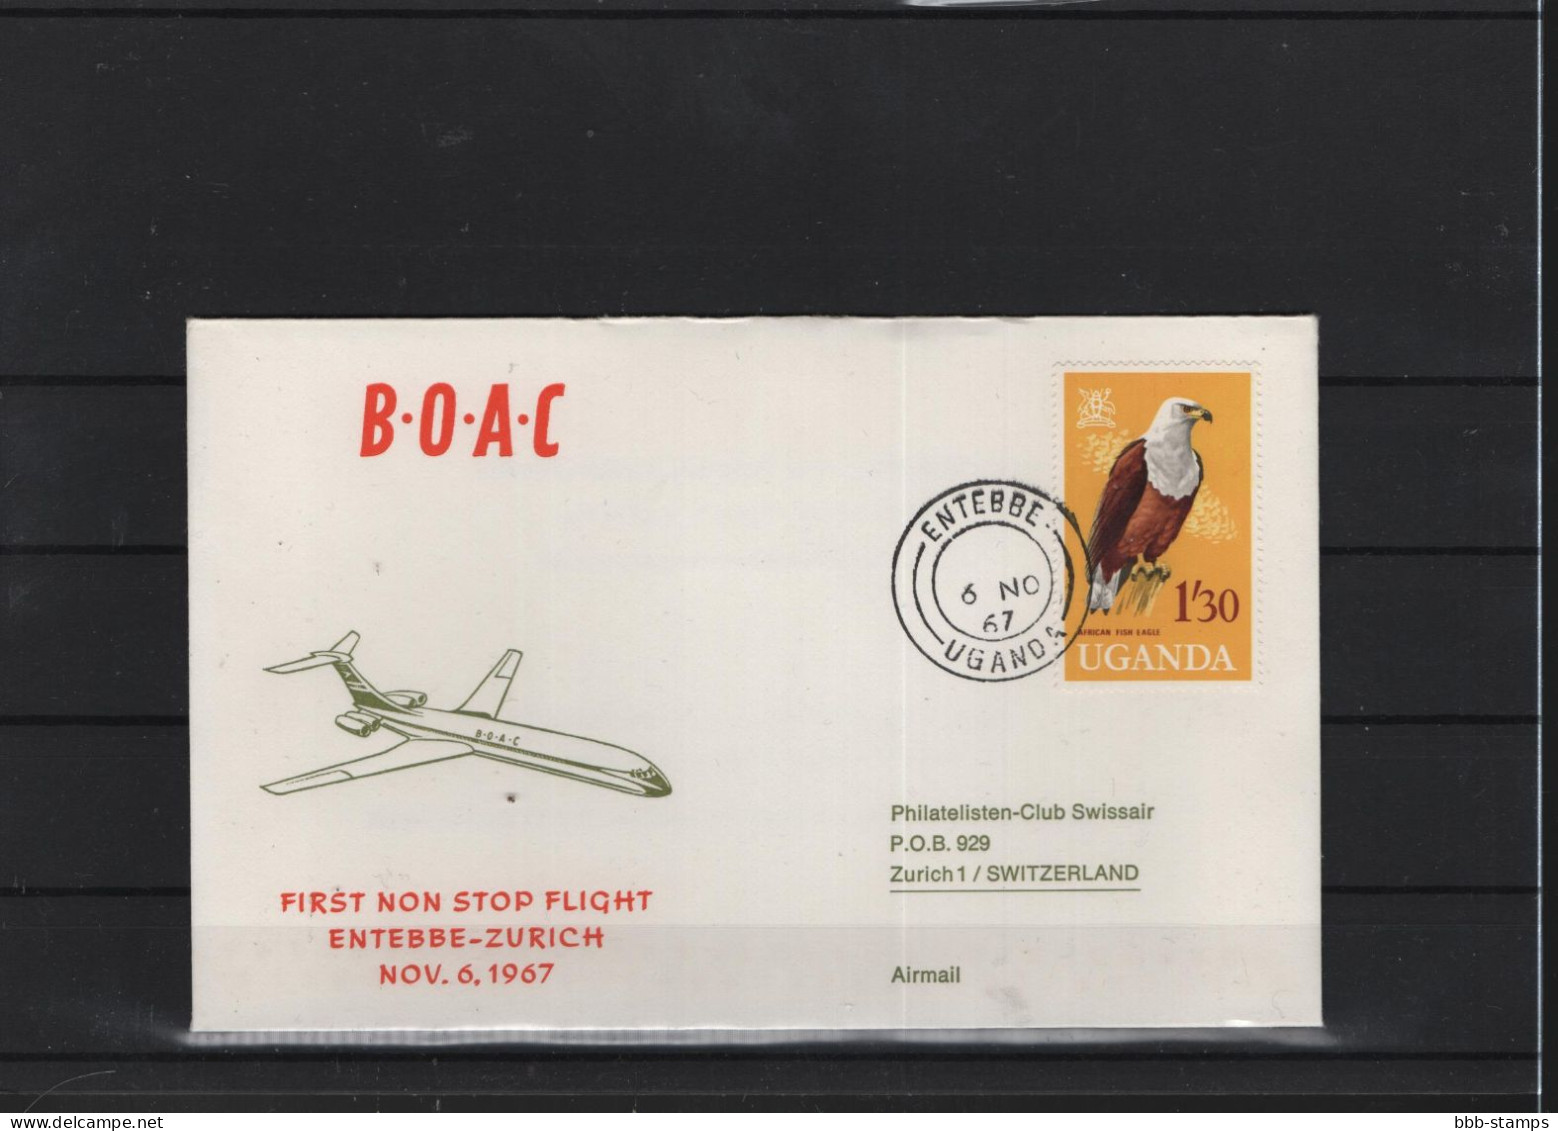 Schweiz Luftpost FFC BOAC 6.11.1966 Entebbe - Zürich - Eerste Vluchten